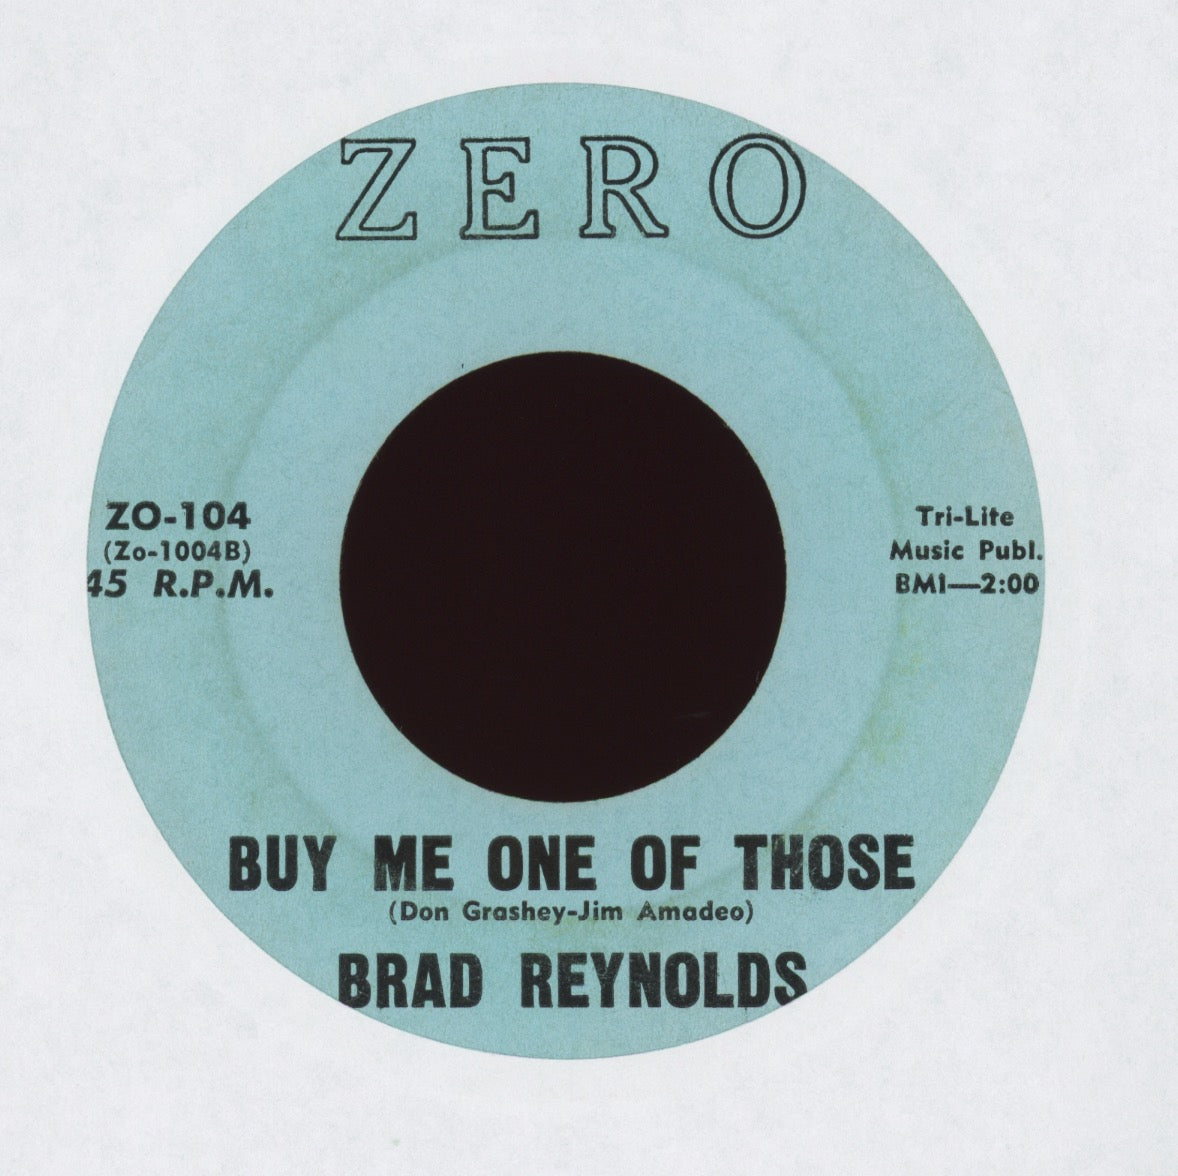 Brad Reynolds - I Locked My Heart on Zero